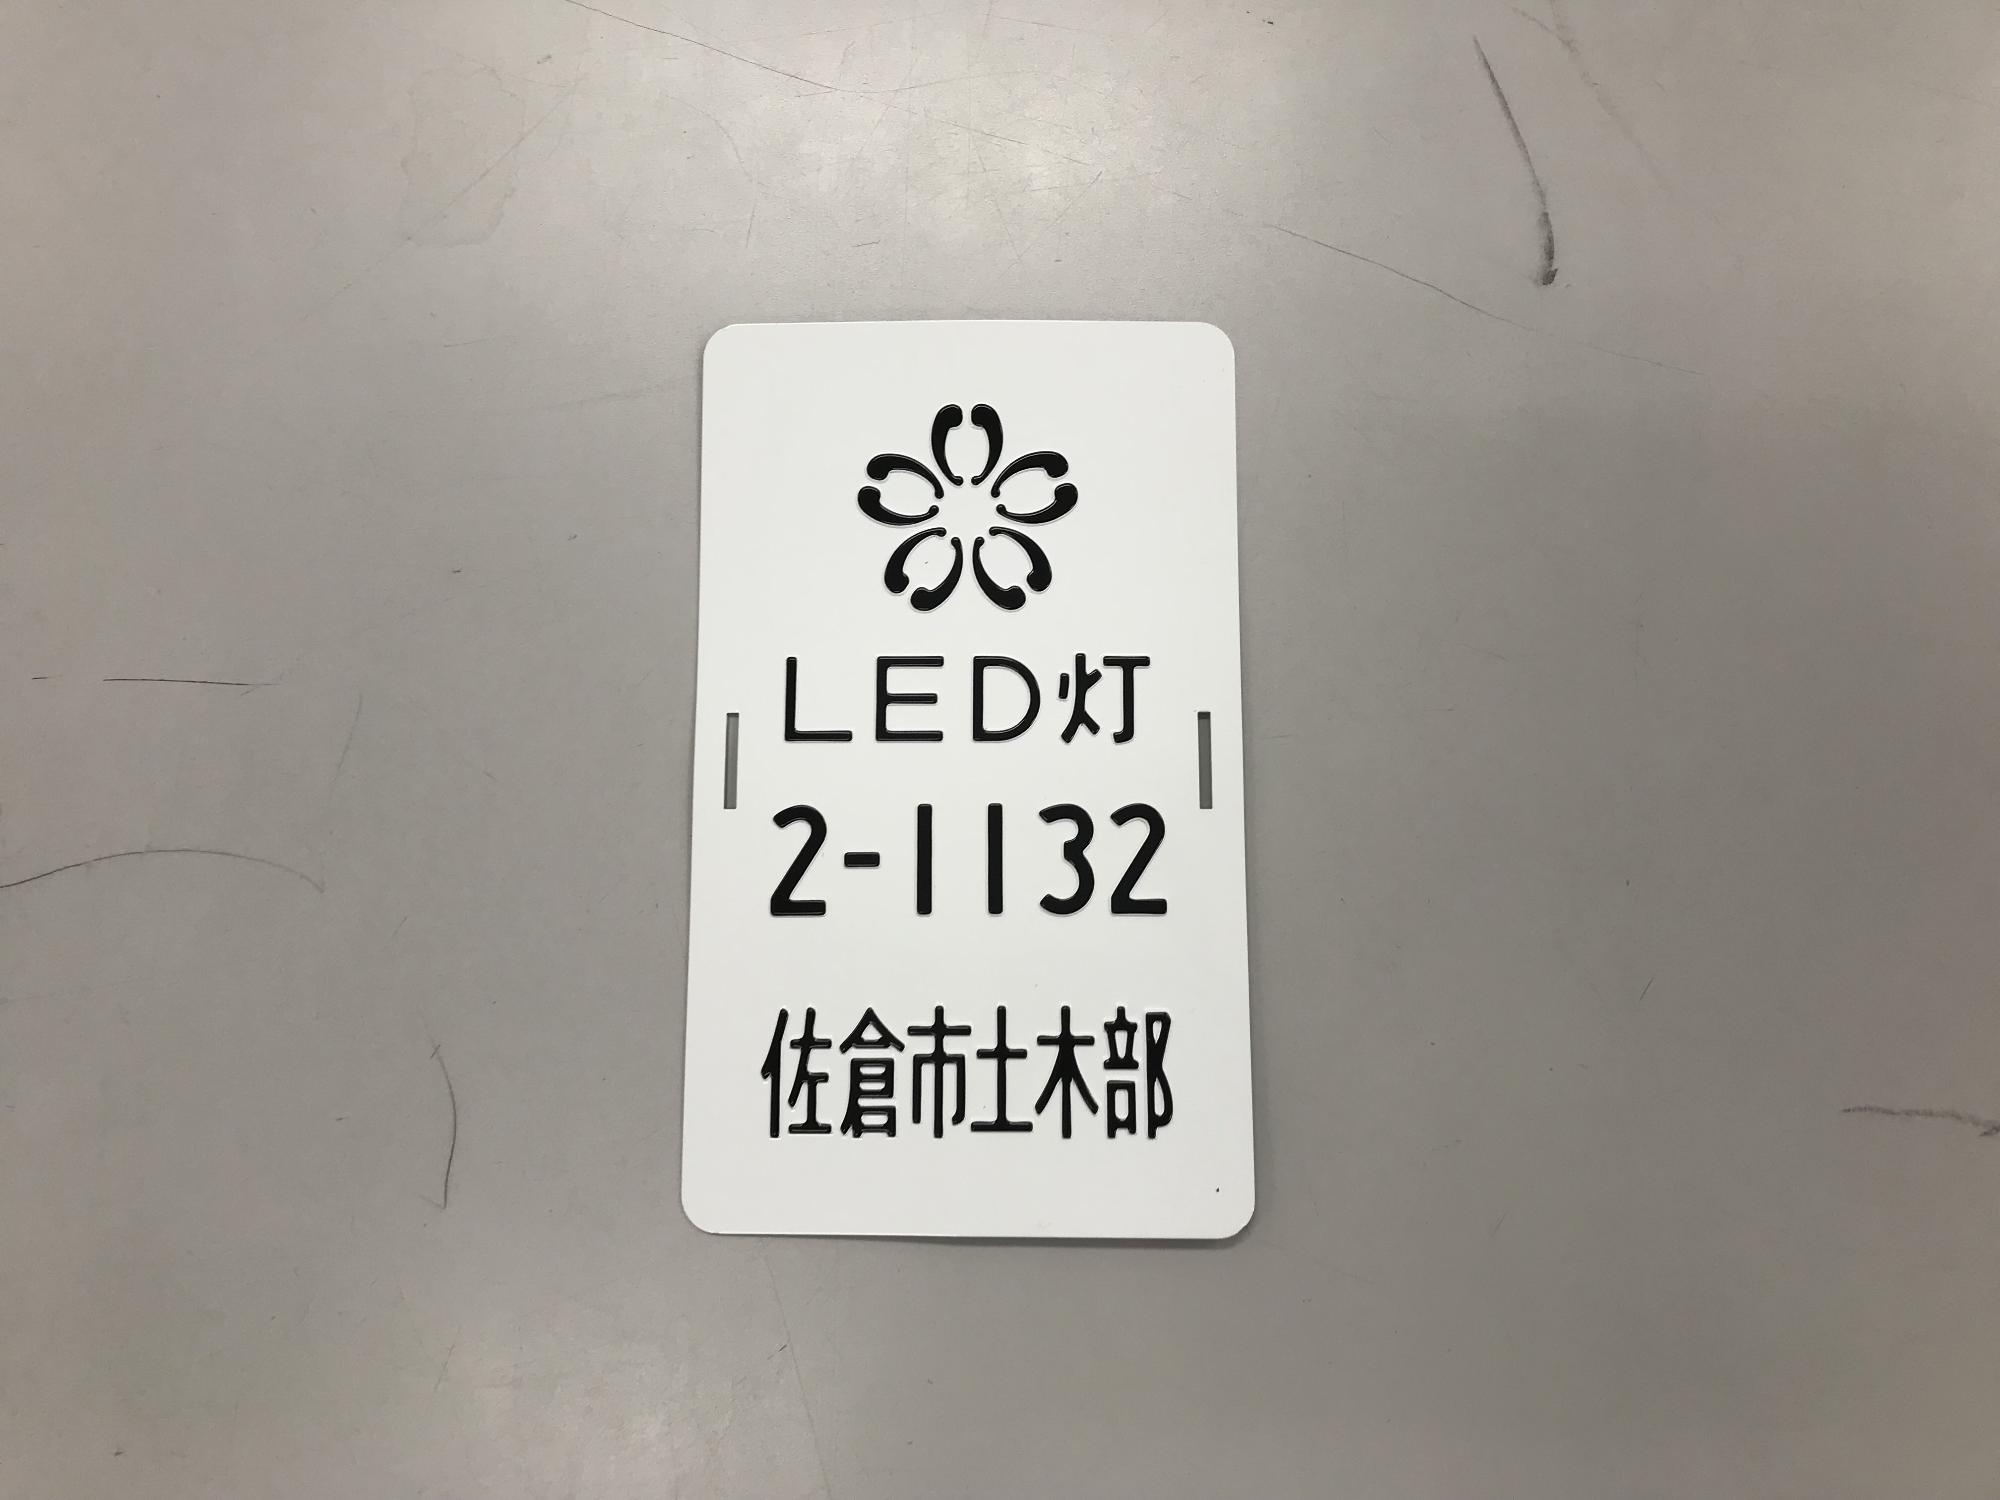 白地に黒でLED灯2-1132佐倉市土木部と書かれた街路灯ナンバープレートの写真